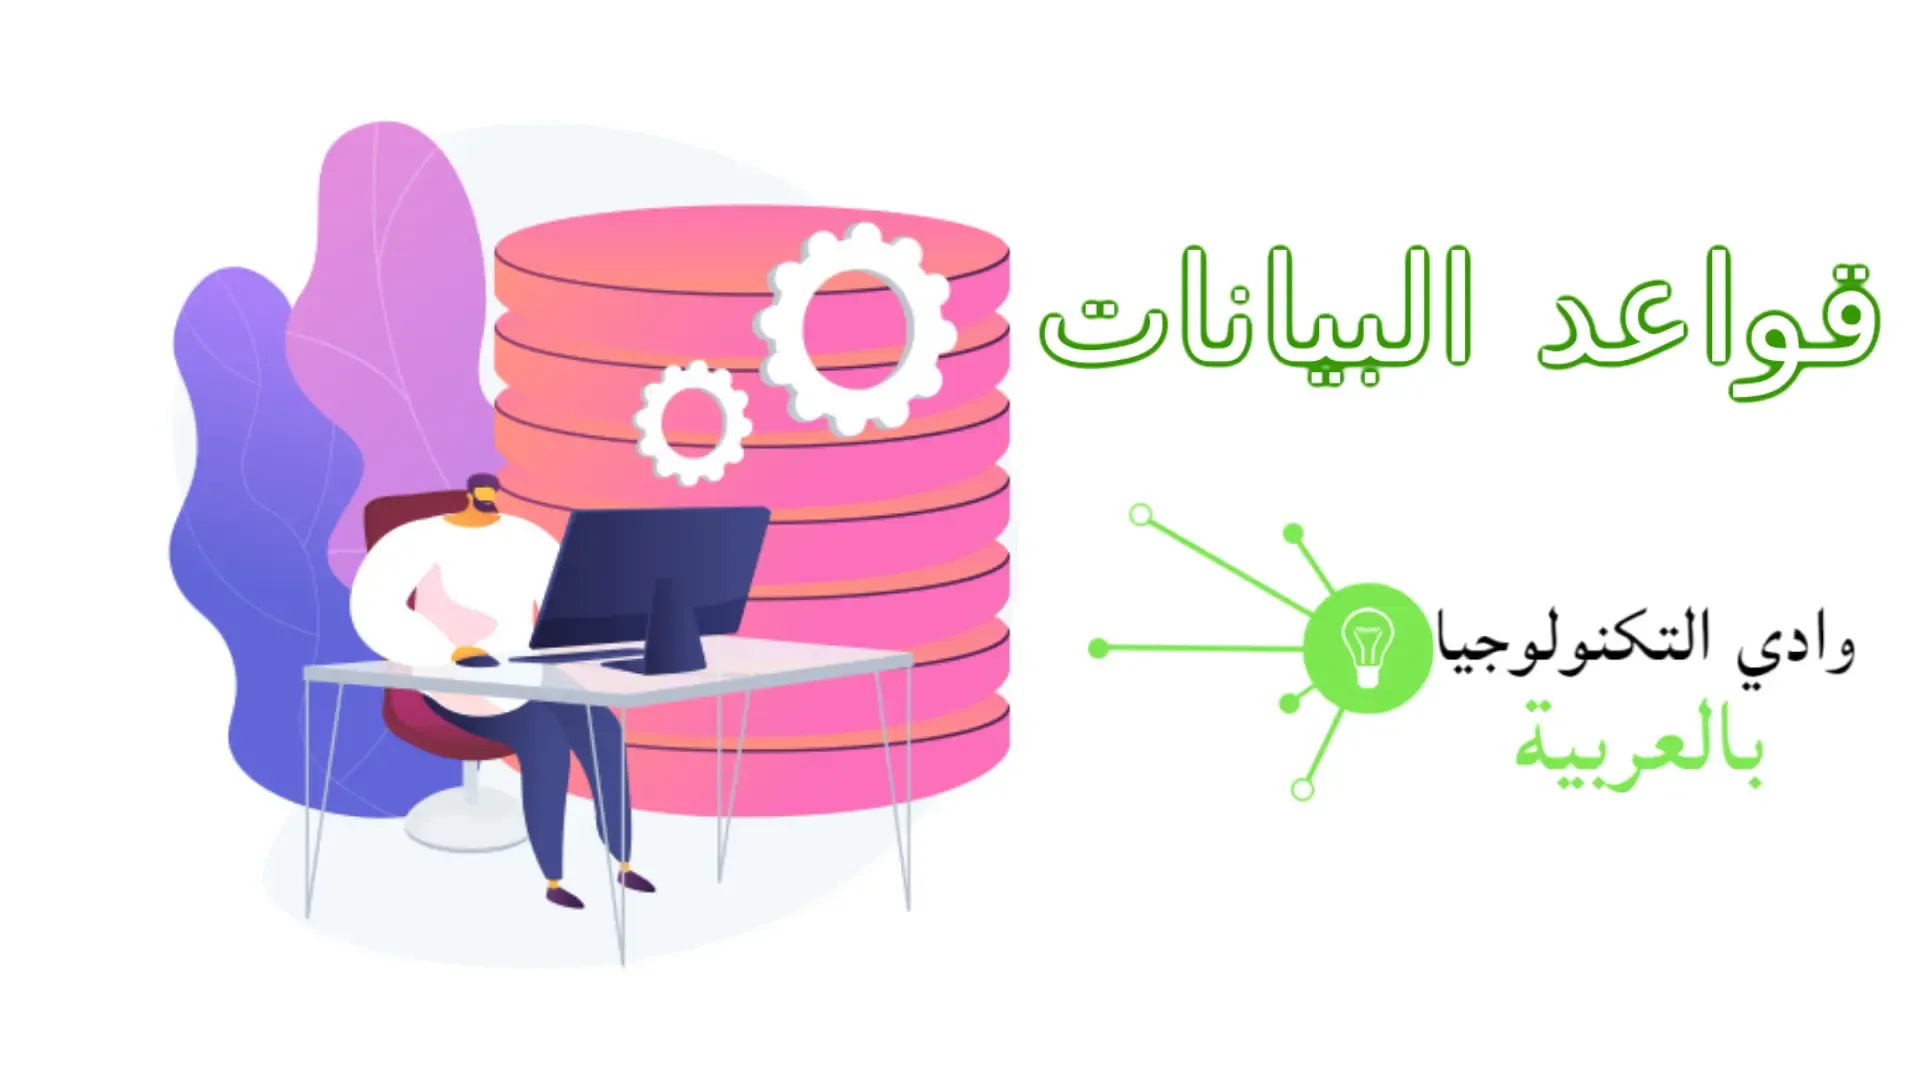 وادي التكنولوجيا | بالعربية: كل ما تريد معرفته عن قواعد البيانات